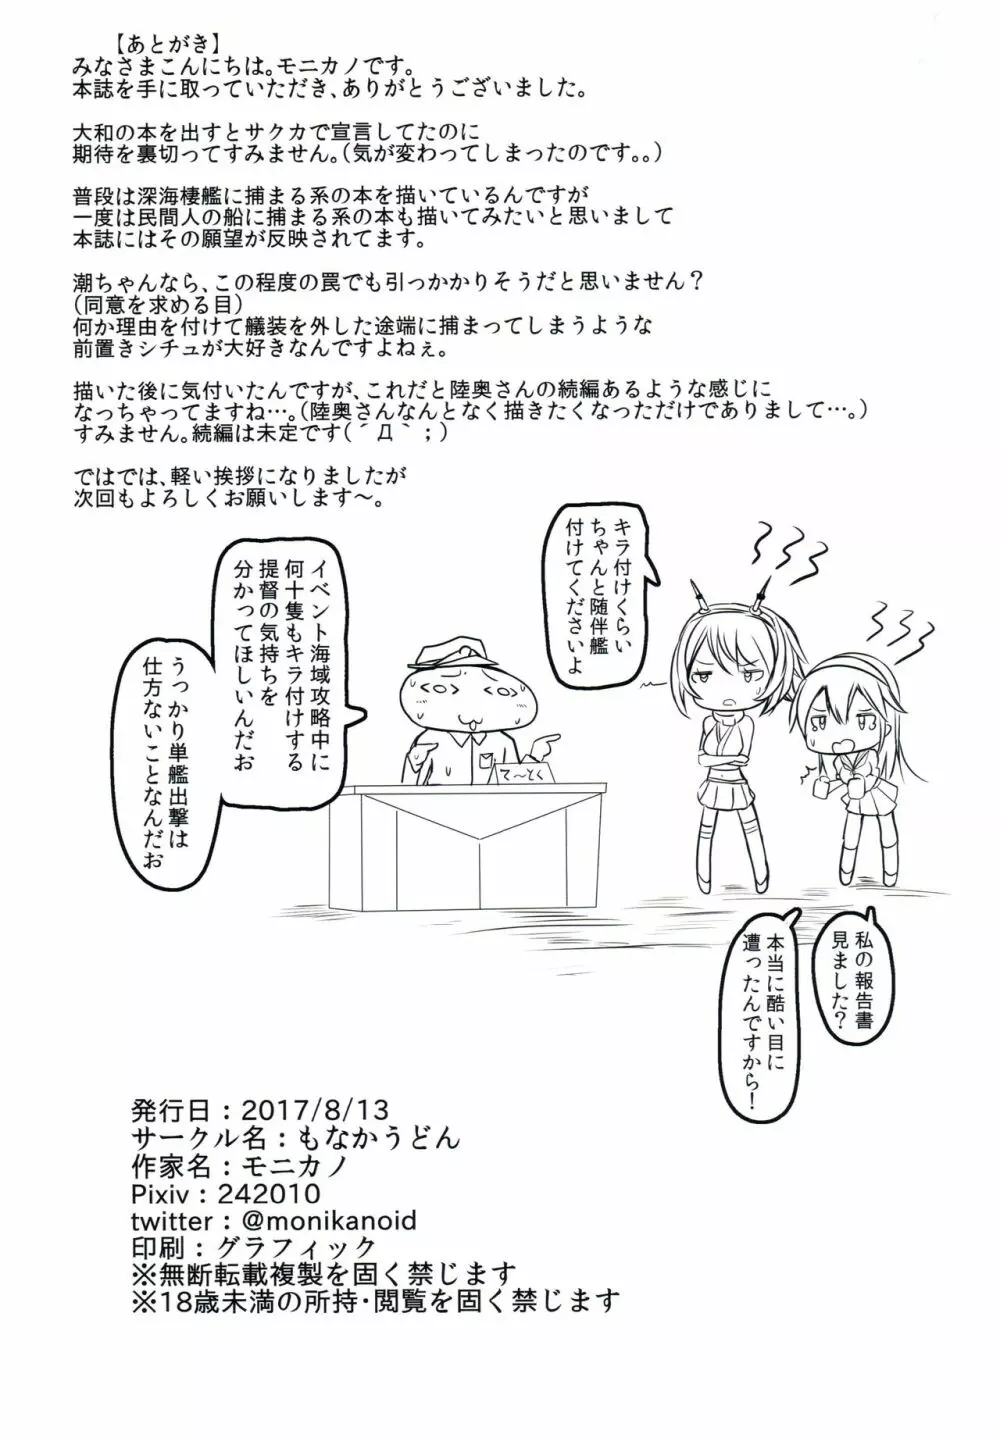 駆逐艦 潮 失踪報告書 - page19